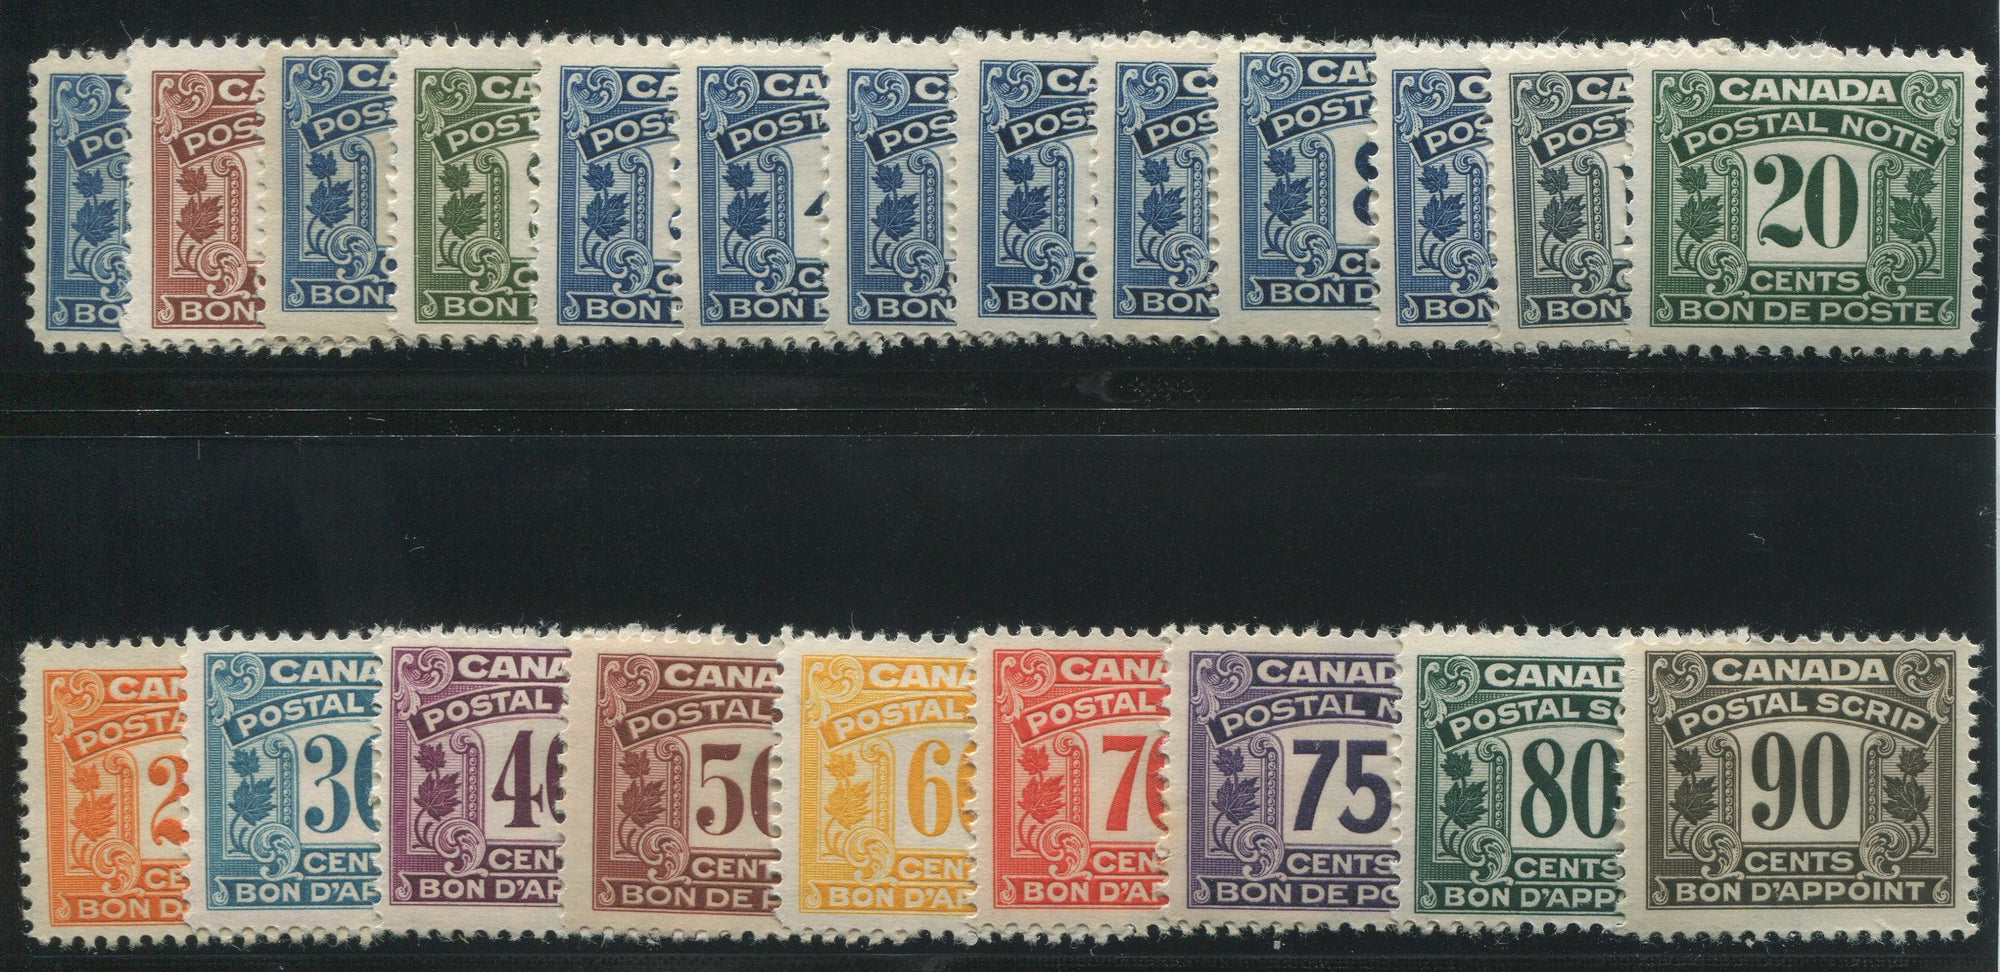 0001PS1707 - FPS1-FPS22 - Mint Set - Deveney Stamps Ltd. Canadian Stamps